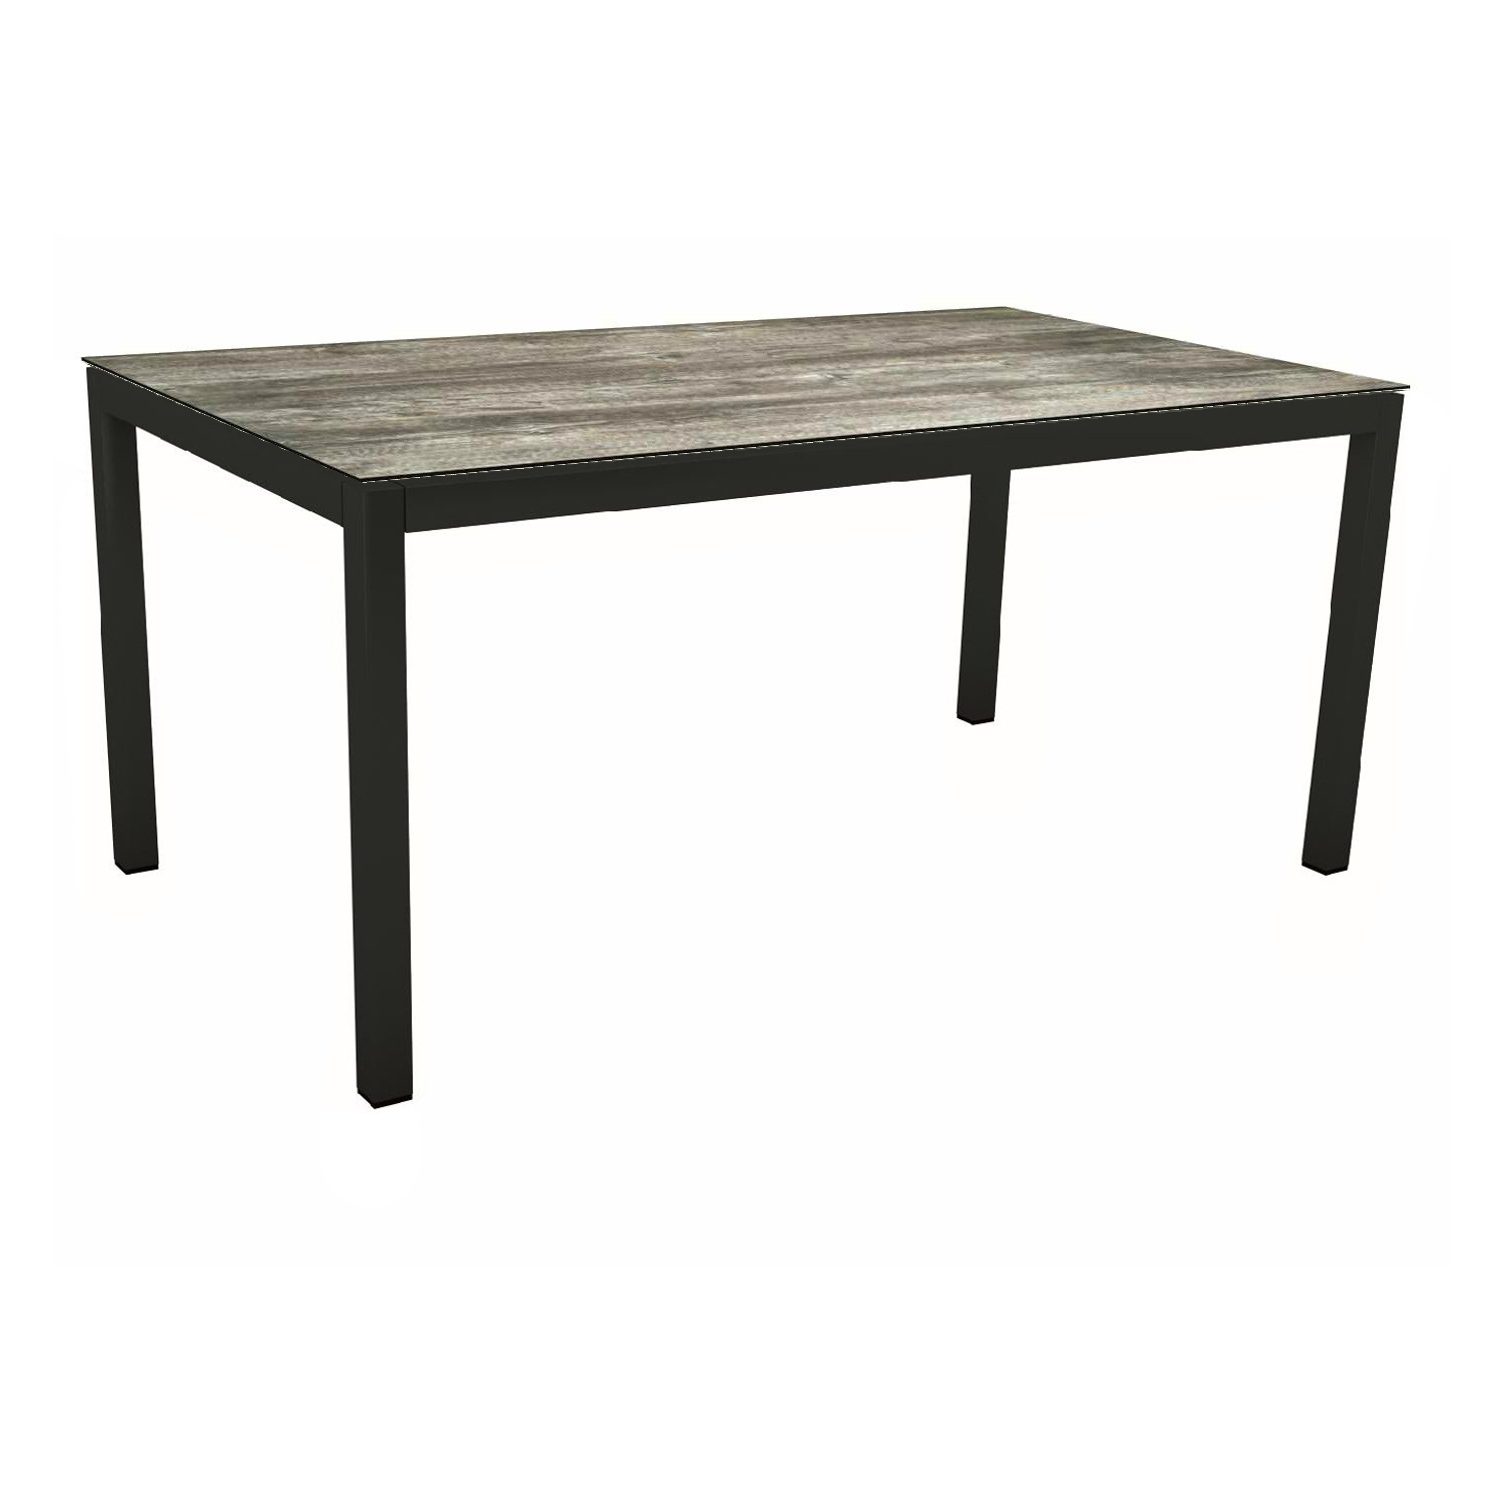 Stern Gartentisch, Gestell Aluminium schwarz matt, Tischplatte HPL Tundra Grau, 160x90 cm